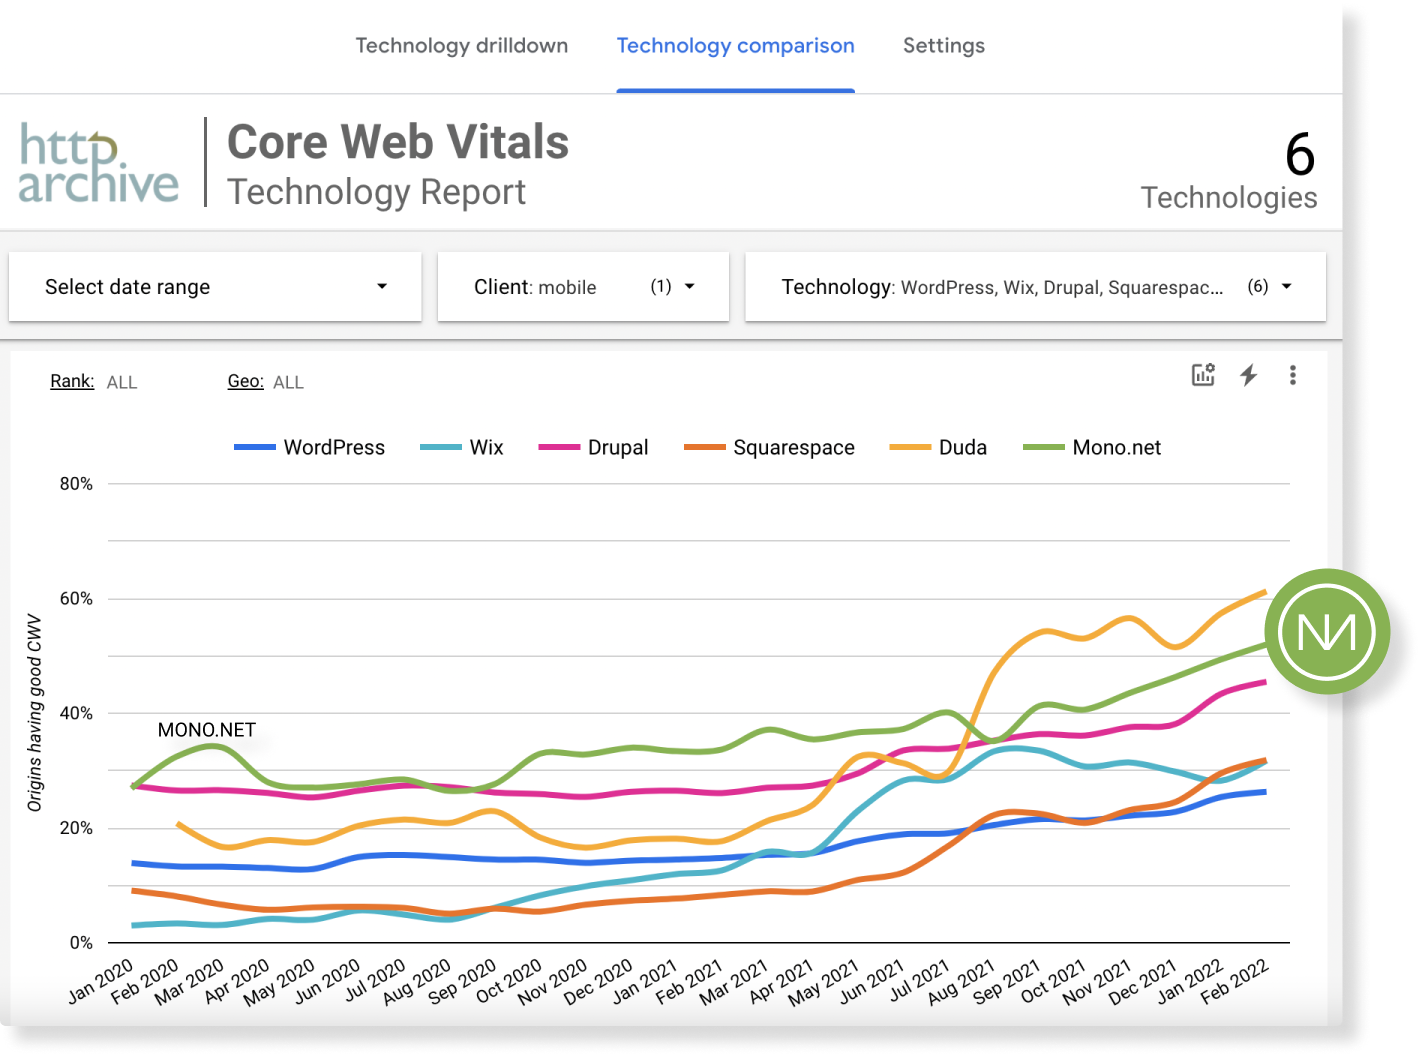 Mono.net core web vitals comparison